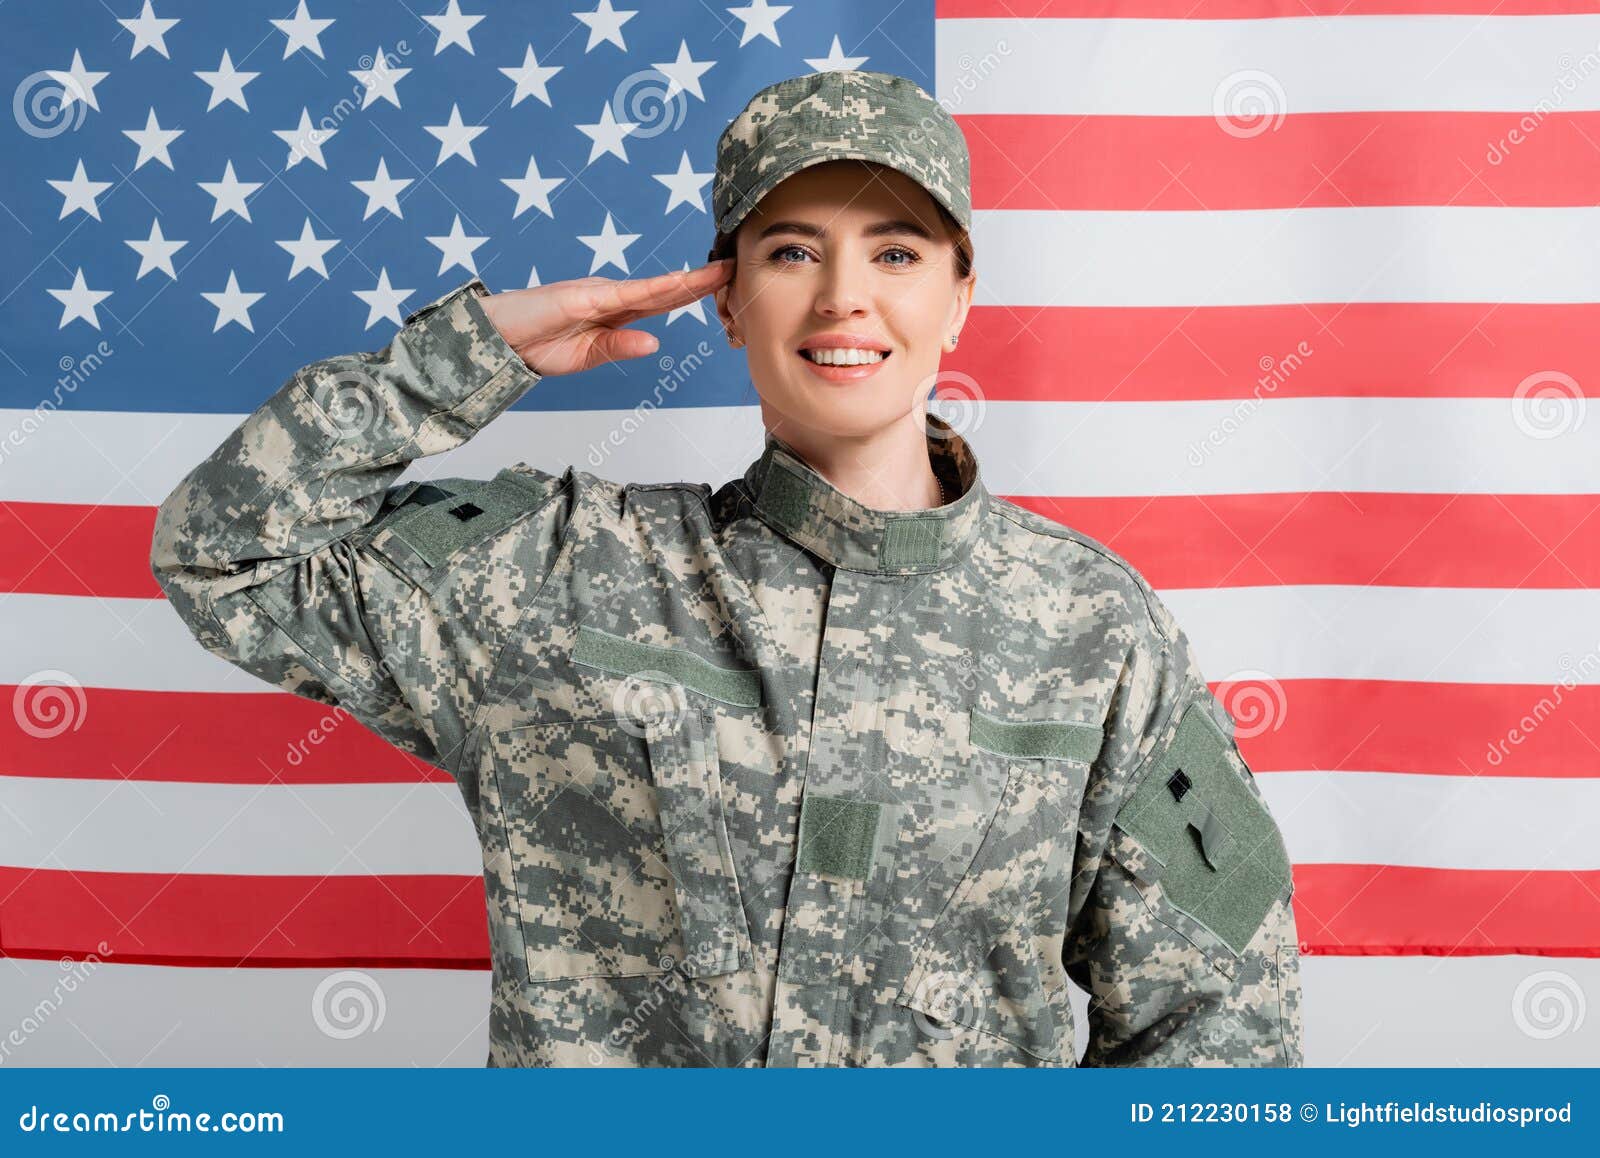 Bañera Expectativa Prominente Mujer En Uniforme Militar En Ee.uu. Foto de archivo - Imagen de mujer,  america: 212230158